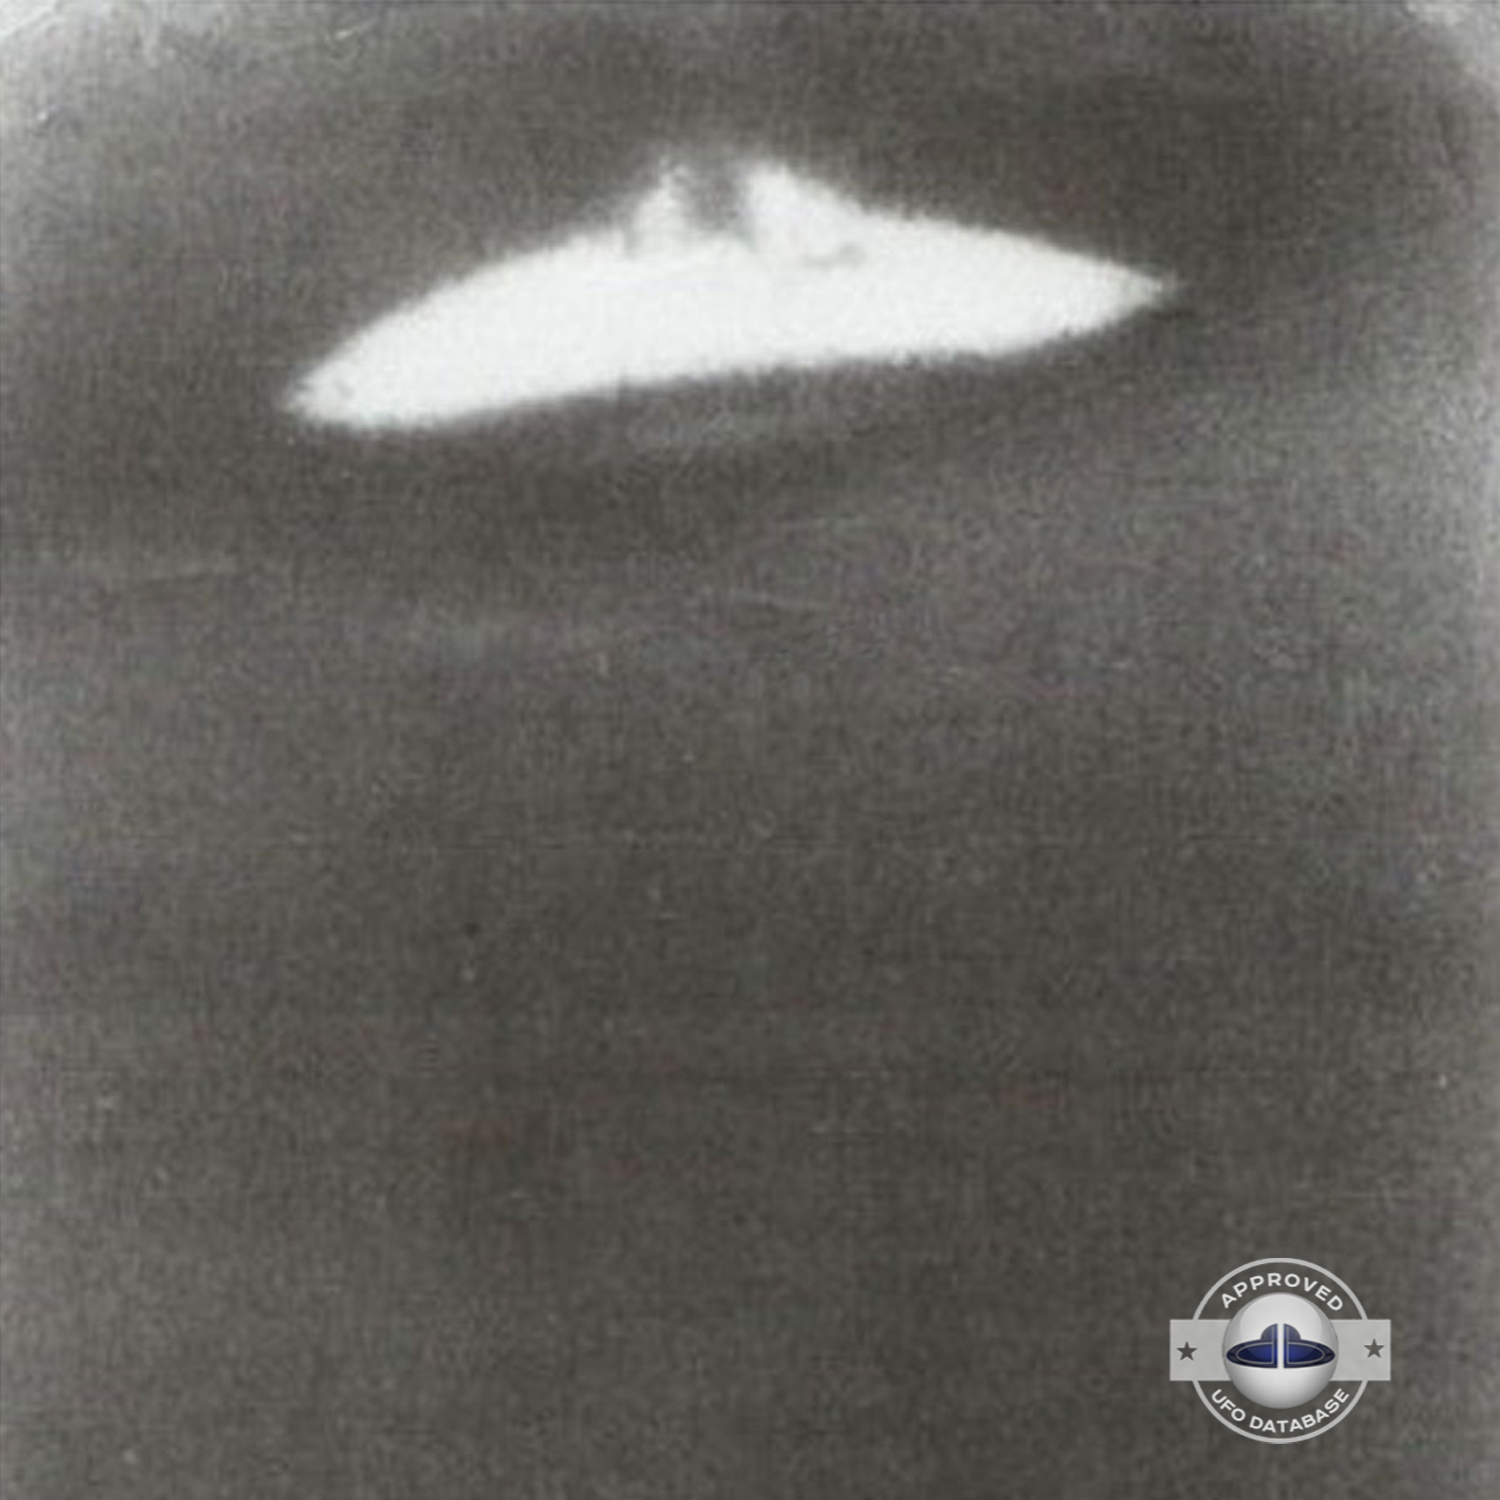 Russia UFO sighting| Dalnegorsk, Primorsky Krai UFO picture | 1989 UFO Picture #141-2